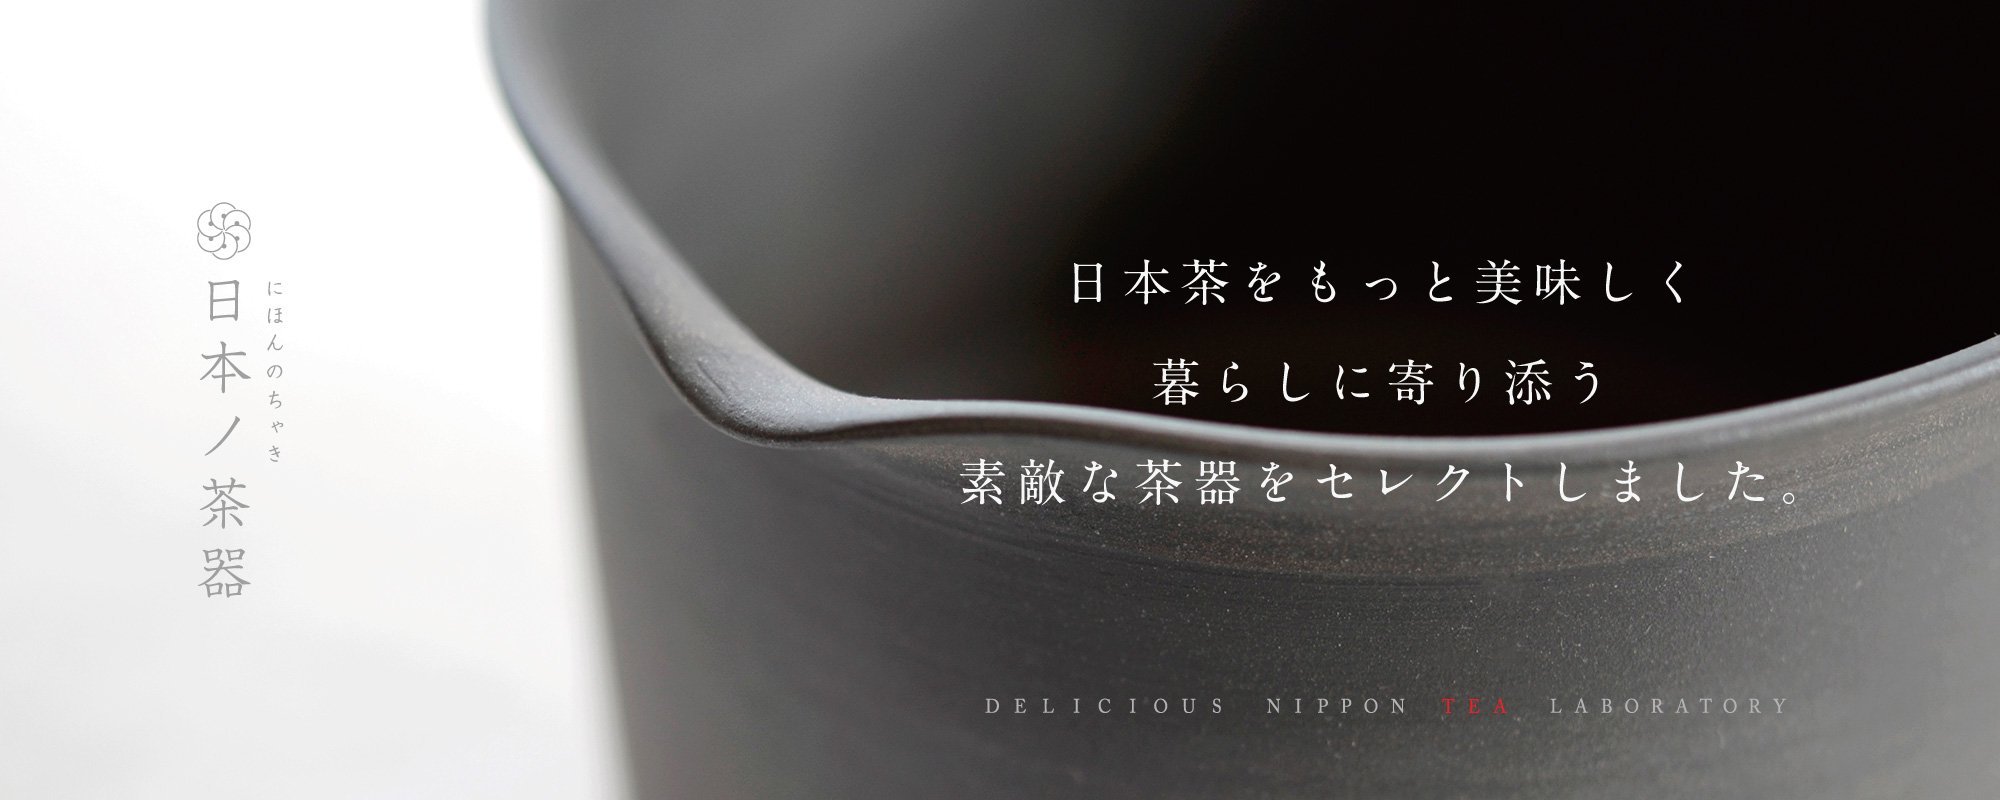 日本ノ茶器「暮らしに寄り添うセレクト茶道具」普段にもギフトにも。おいしい日本茶研究所よりお届けします。